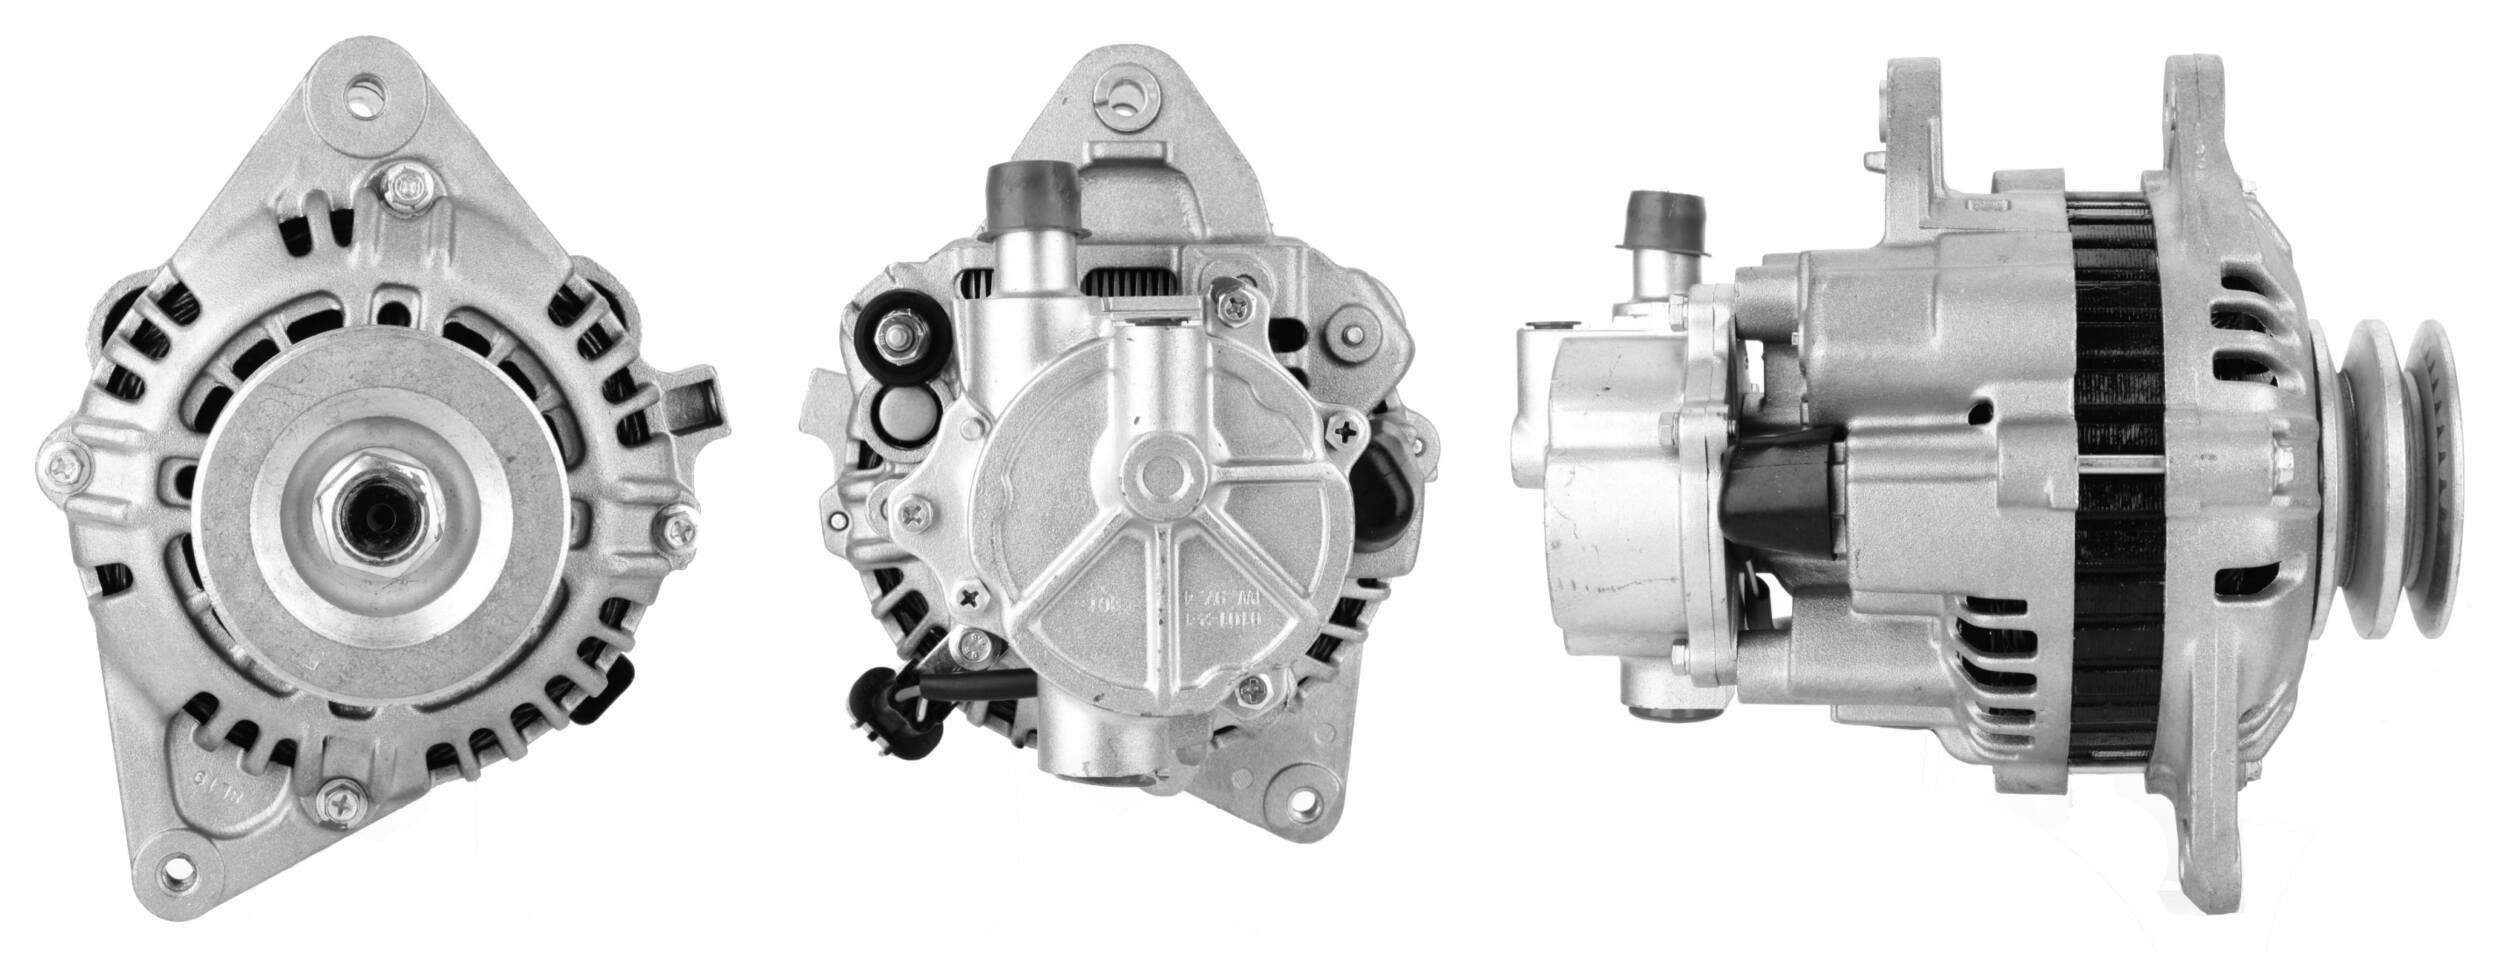 ELSTOCK 28-3852 Alternator 14V, 90A, M6 B+, L-S Plug 43, 0043, incl. vacuum pump, Ø 76 mm